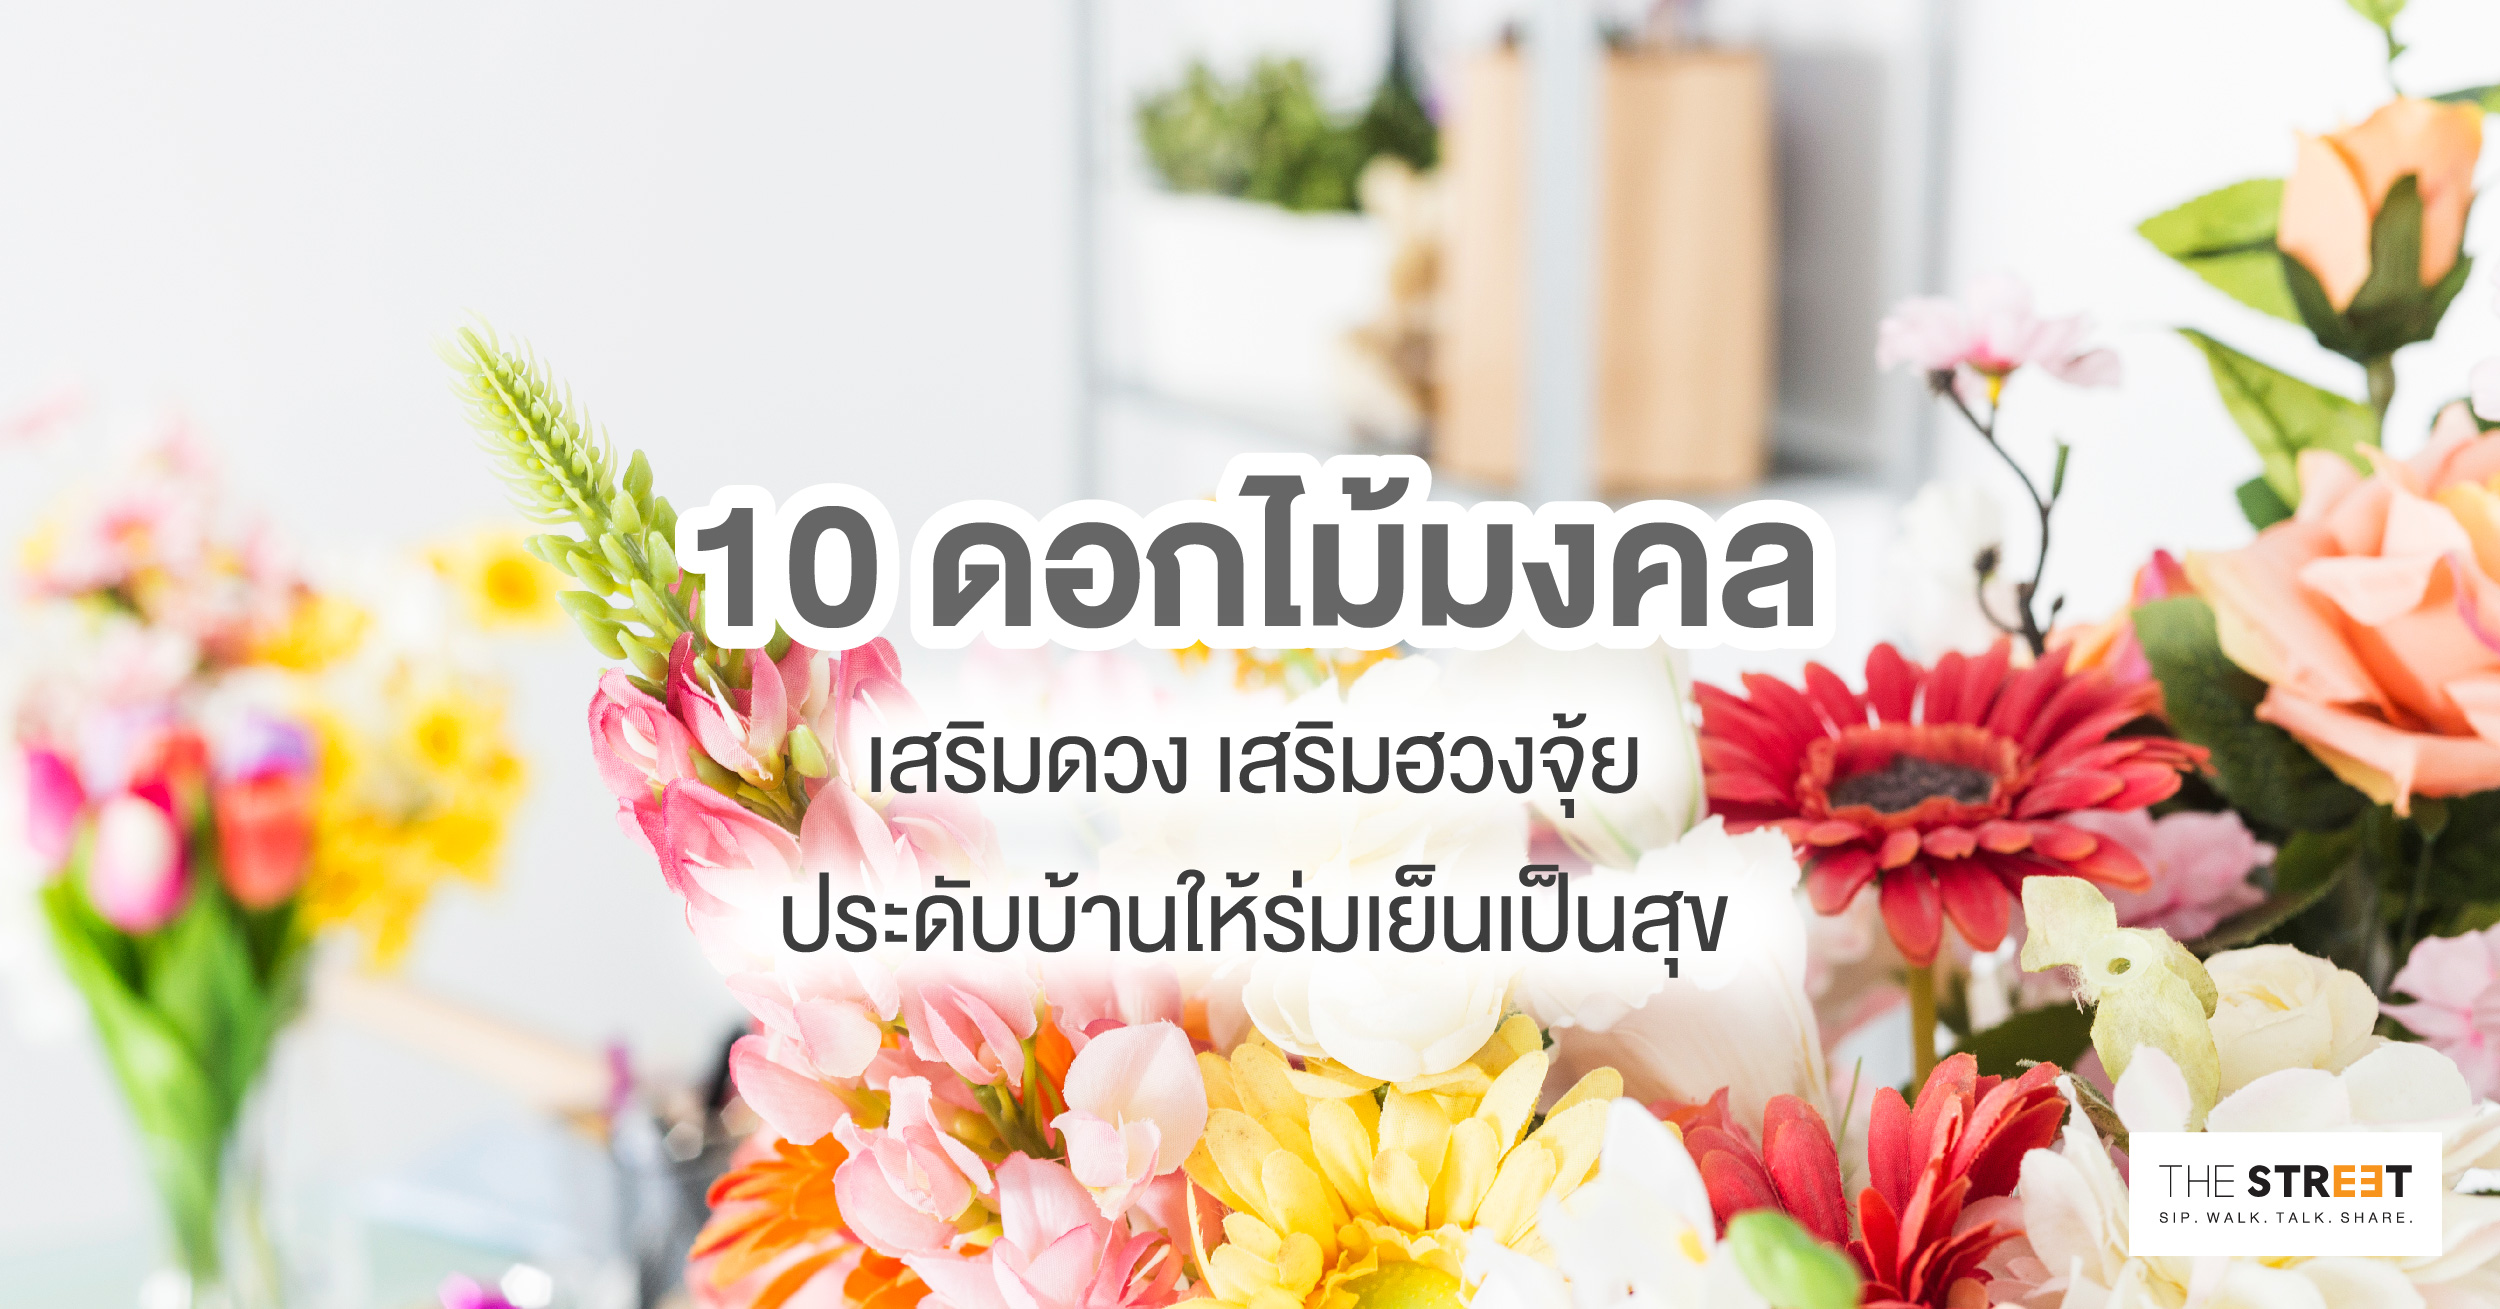 10-ดอกไม้มงคลเสริมดวง-เสริมฮวงจุ้ย-ประดับบ้านให้ร่มเย็นเป็นสุข